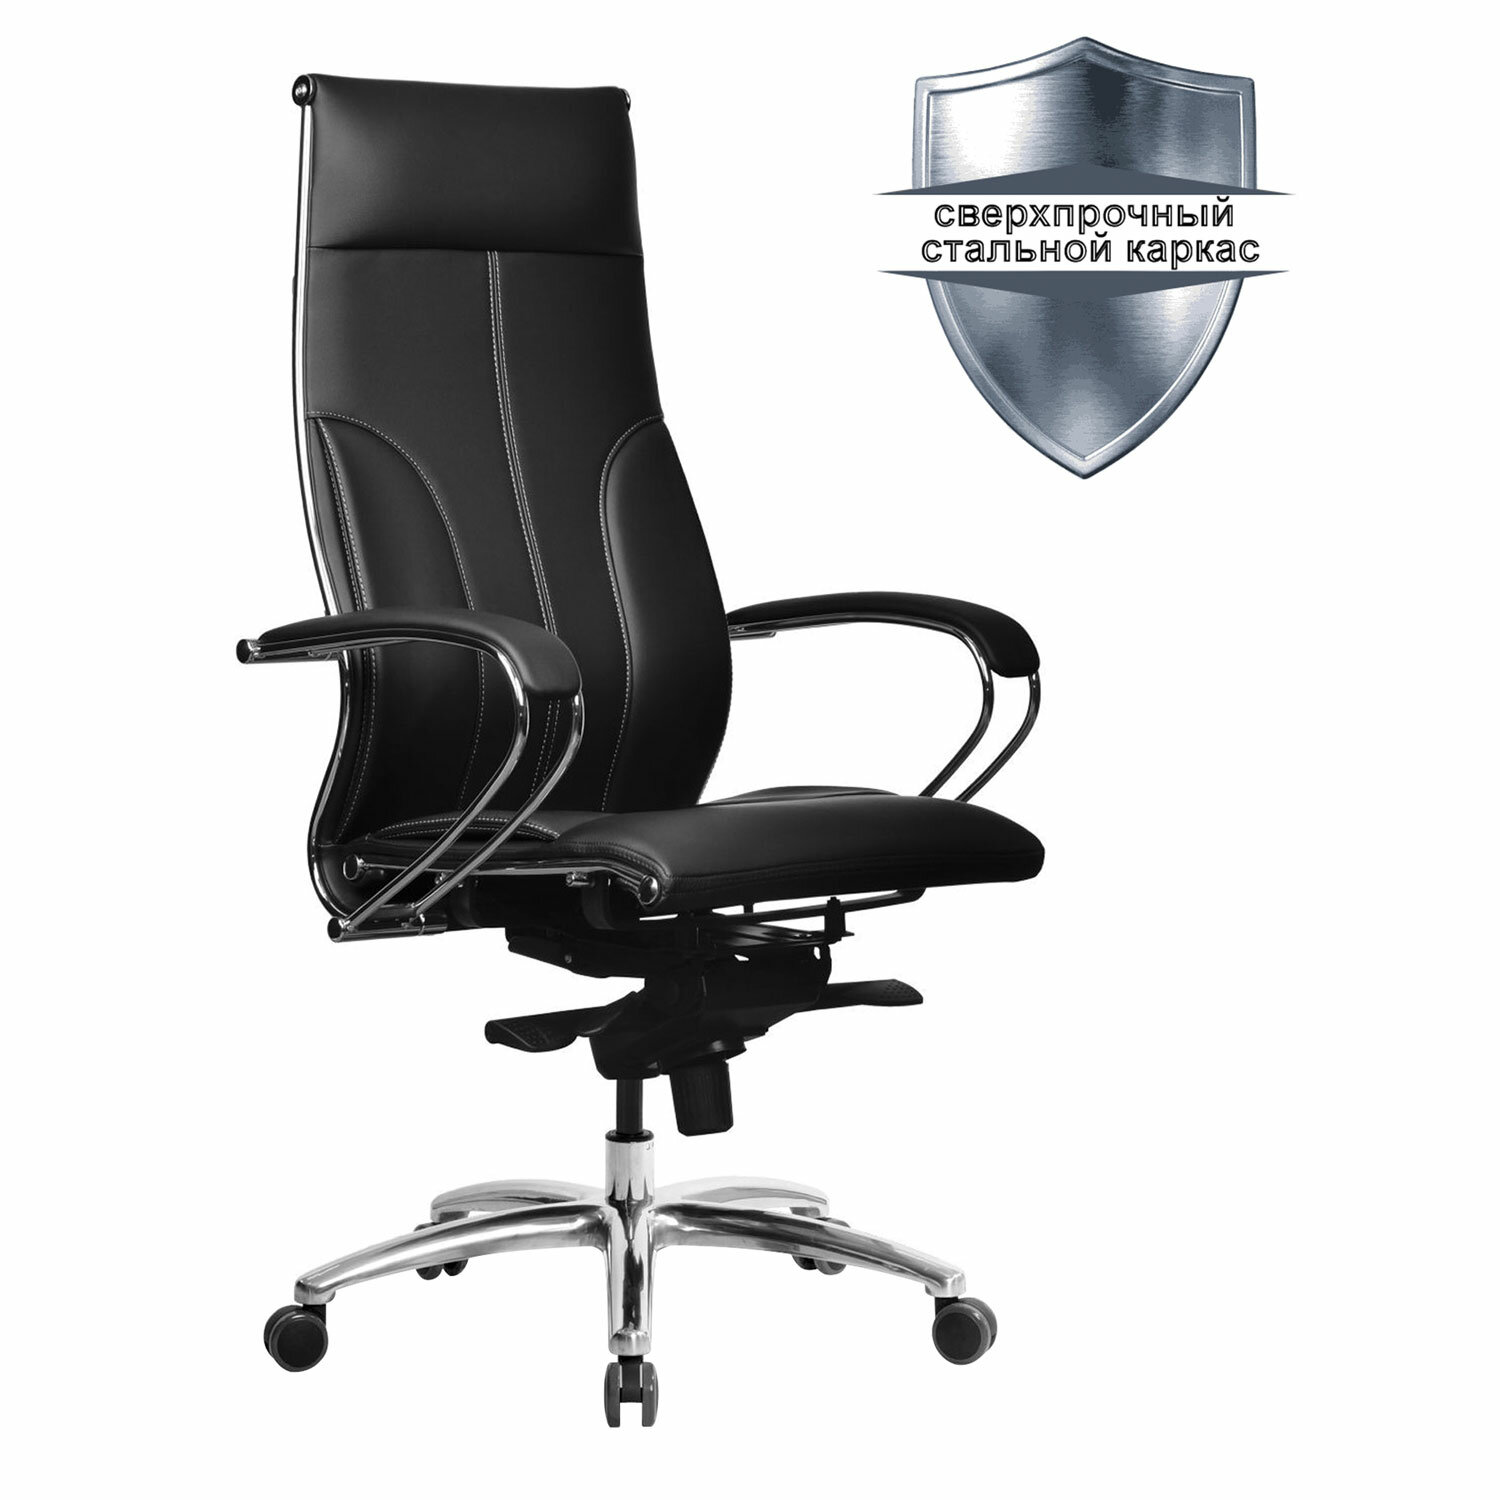 Кресло офисное МЕТТА SAMURAI Lux, рецик. кожа, регулируемое сиденье, черное